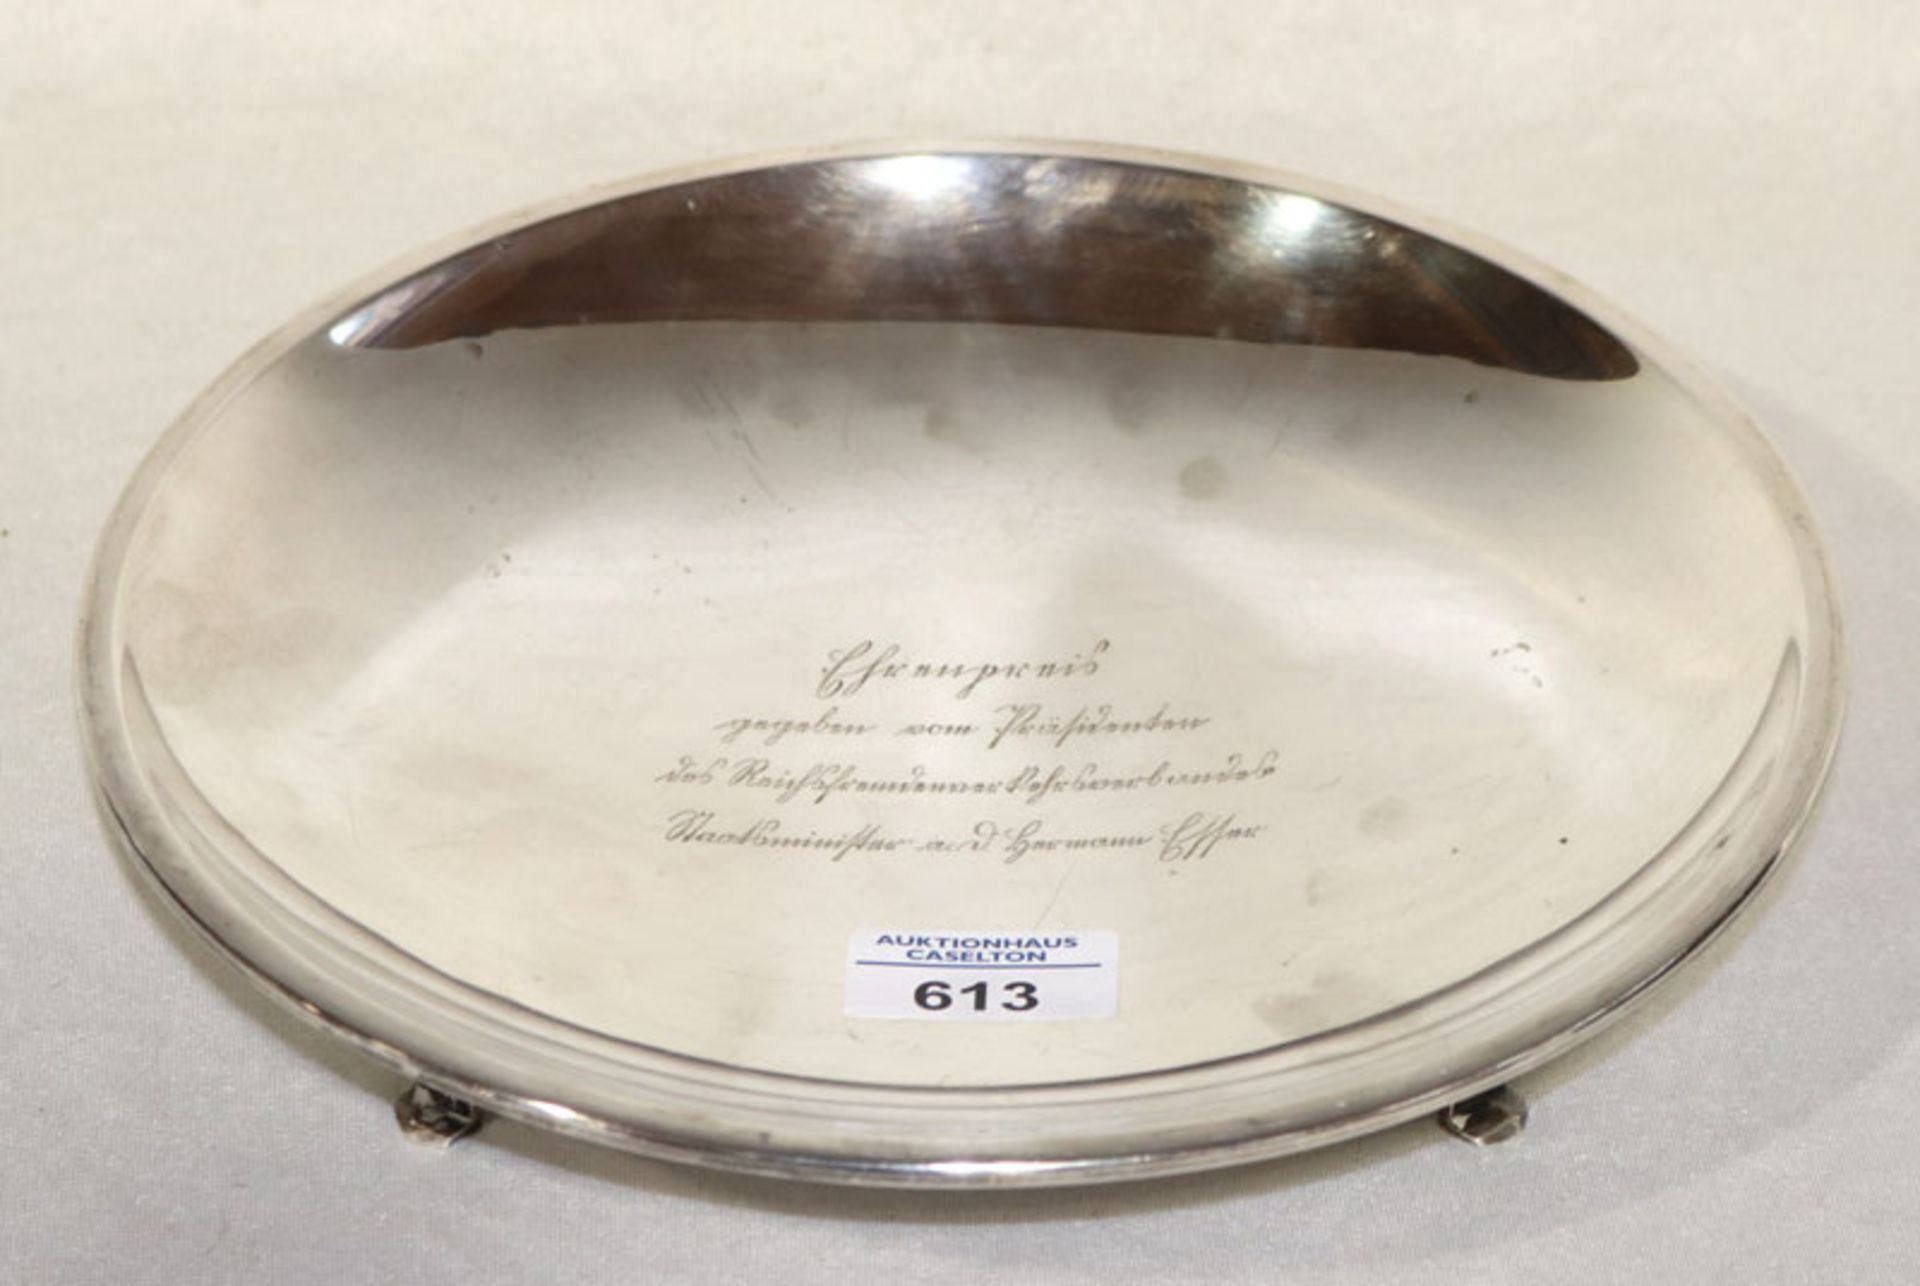 Silberschale Ehrenpreis, graviert, 835 Silber, 436 gr., H 4 cm, D 25,5 cm